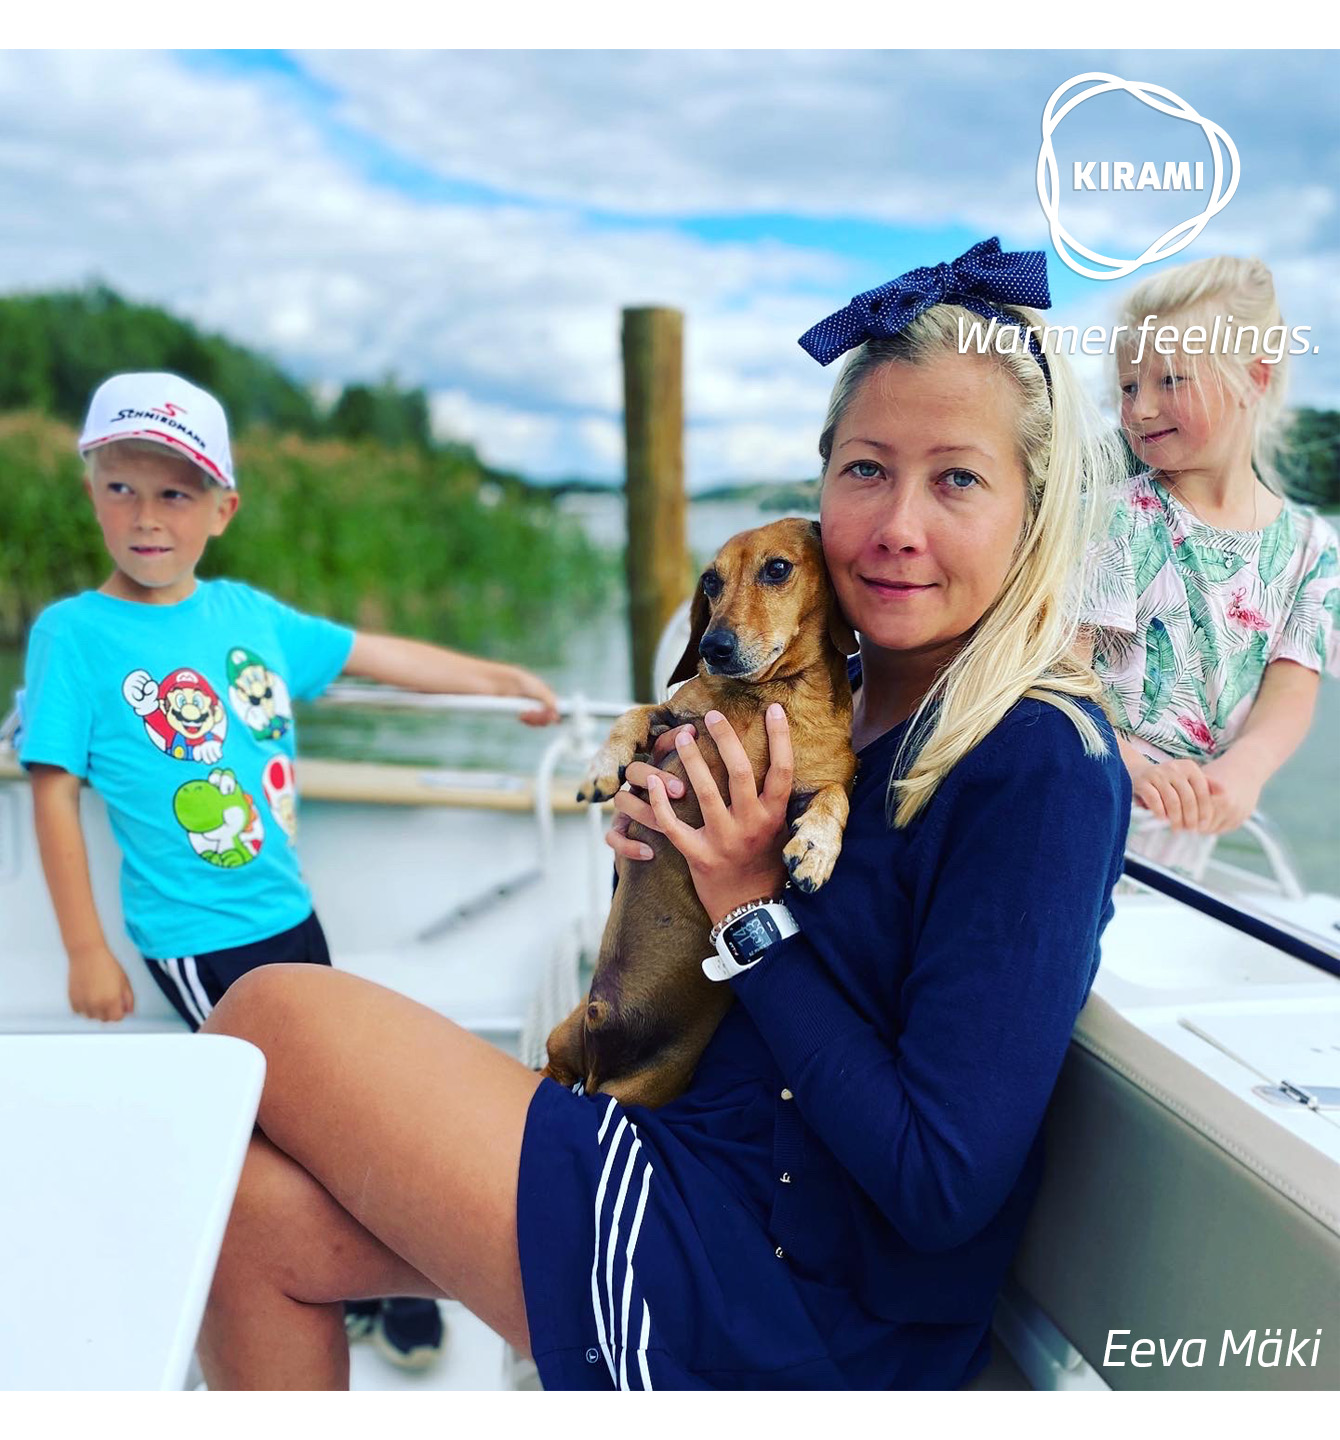 Kirami bedankt sich bei Hund Onni und der Familie Mäki für diese schöne Geschichte und die Fotos | Kirami